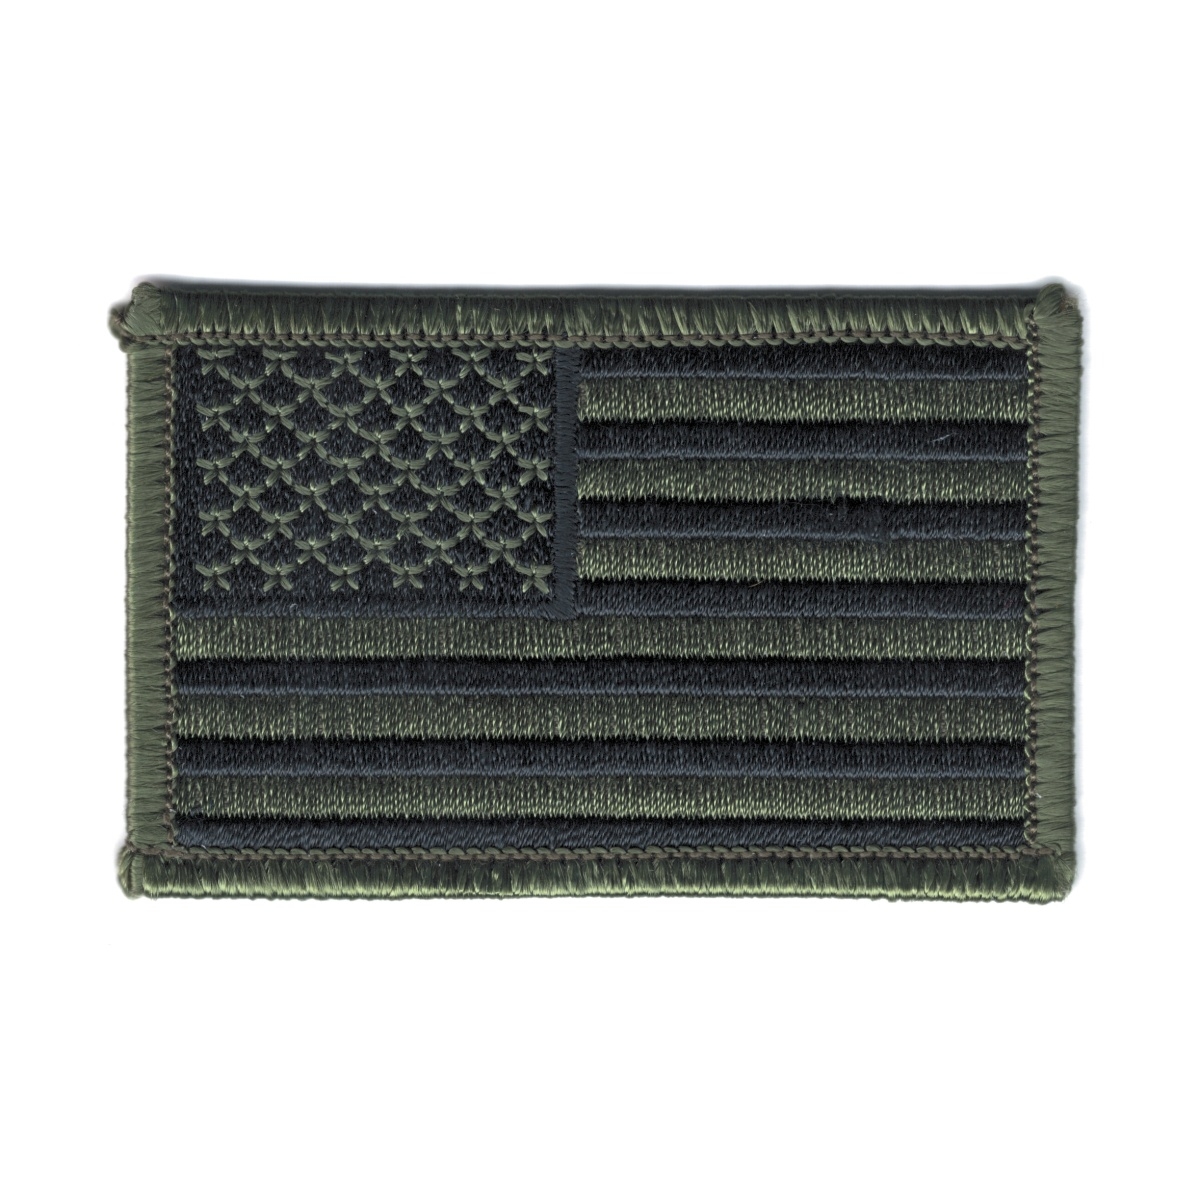 nášivka US vlajka 5 x 7,5 cm zeleno/černá